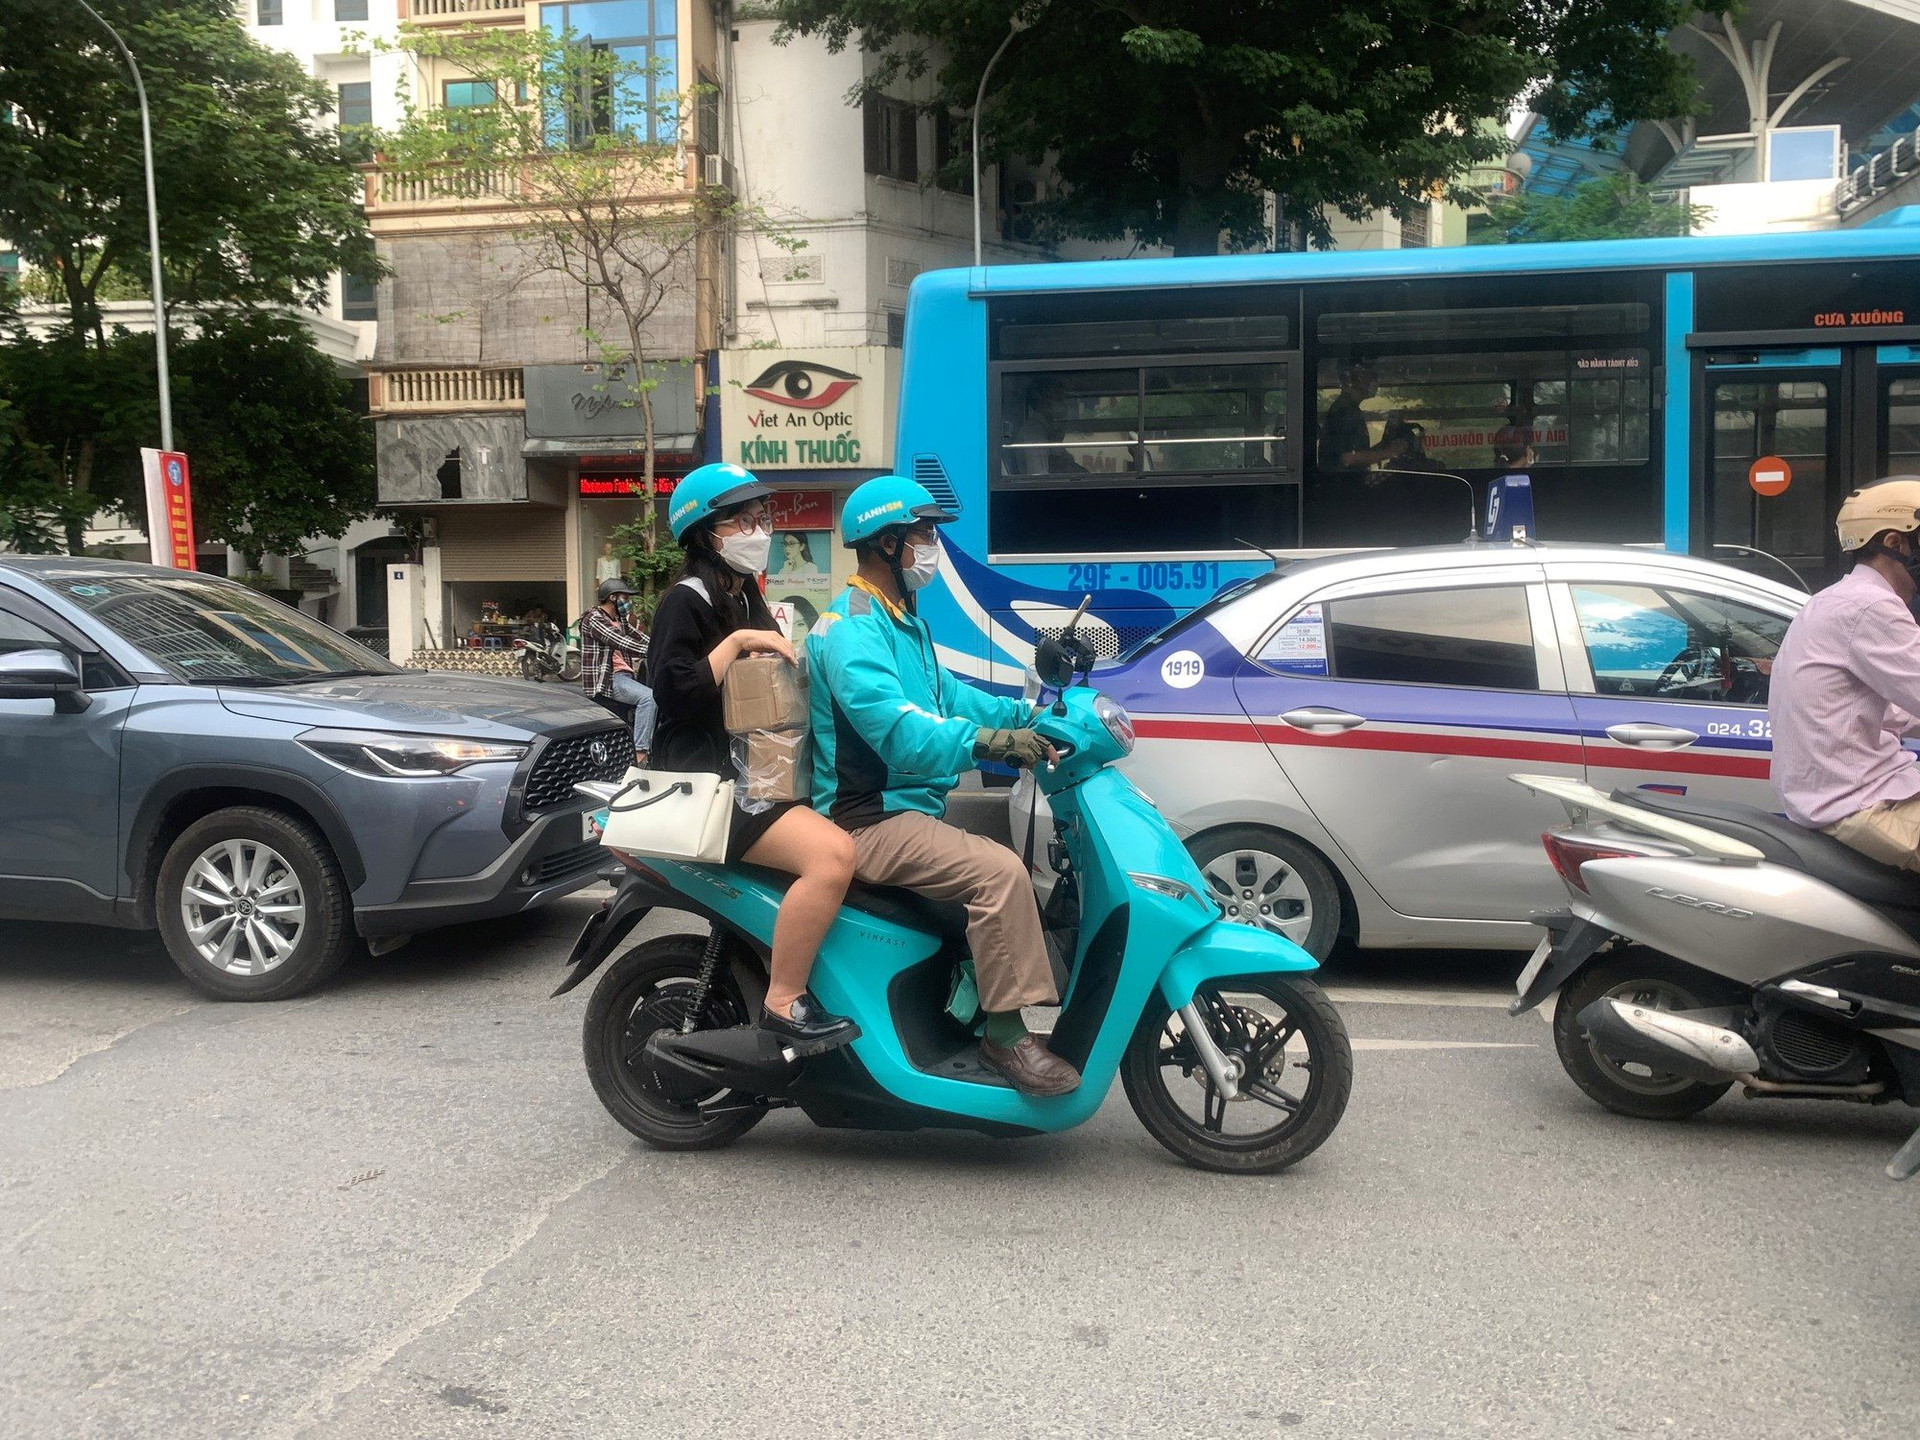 Cộng đồng tài xế SM Bike sau 2 tháng chạy ‘xe ôm điện’: ‘Khách nhiều, thu nhập ổn định’ - Ảnh 1.